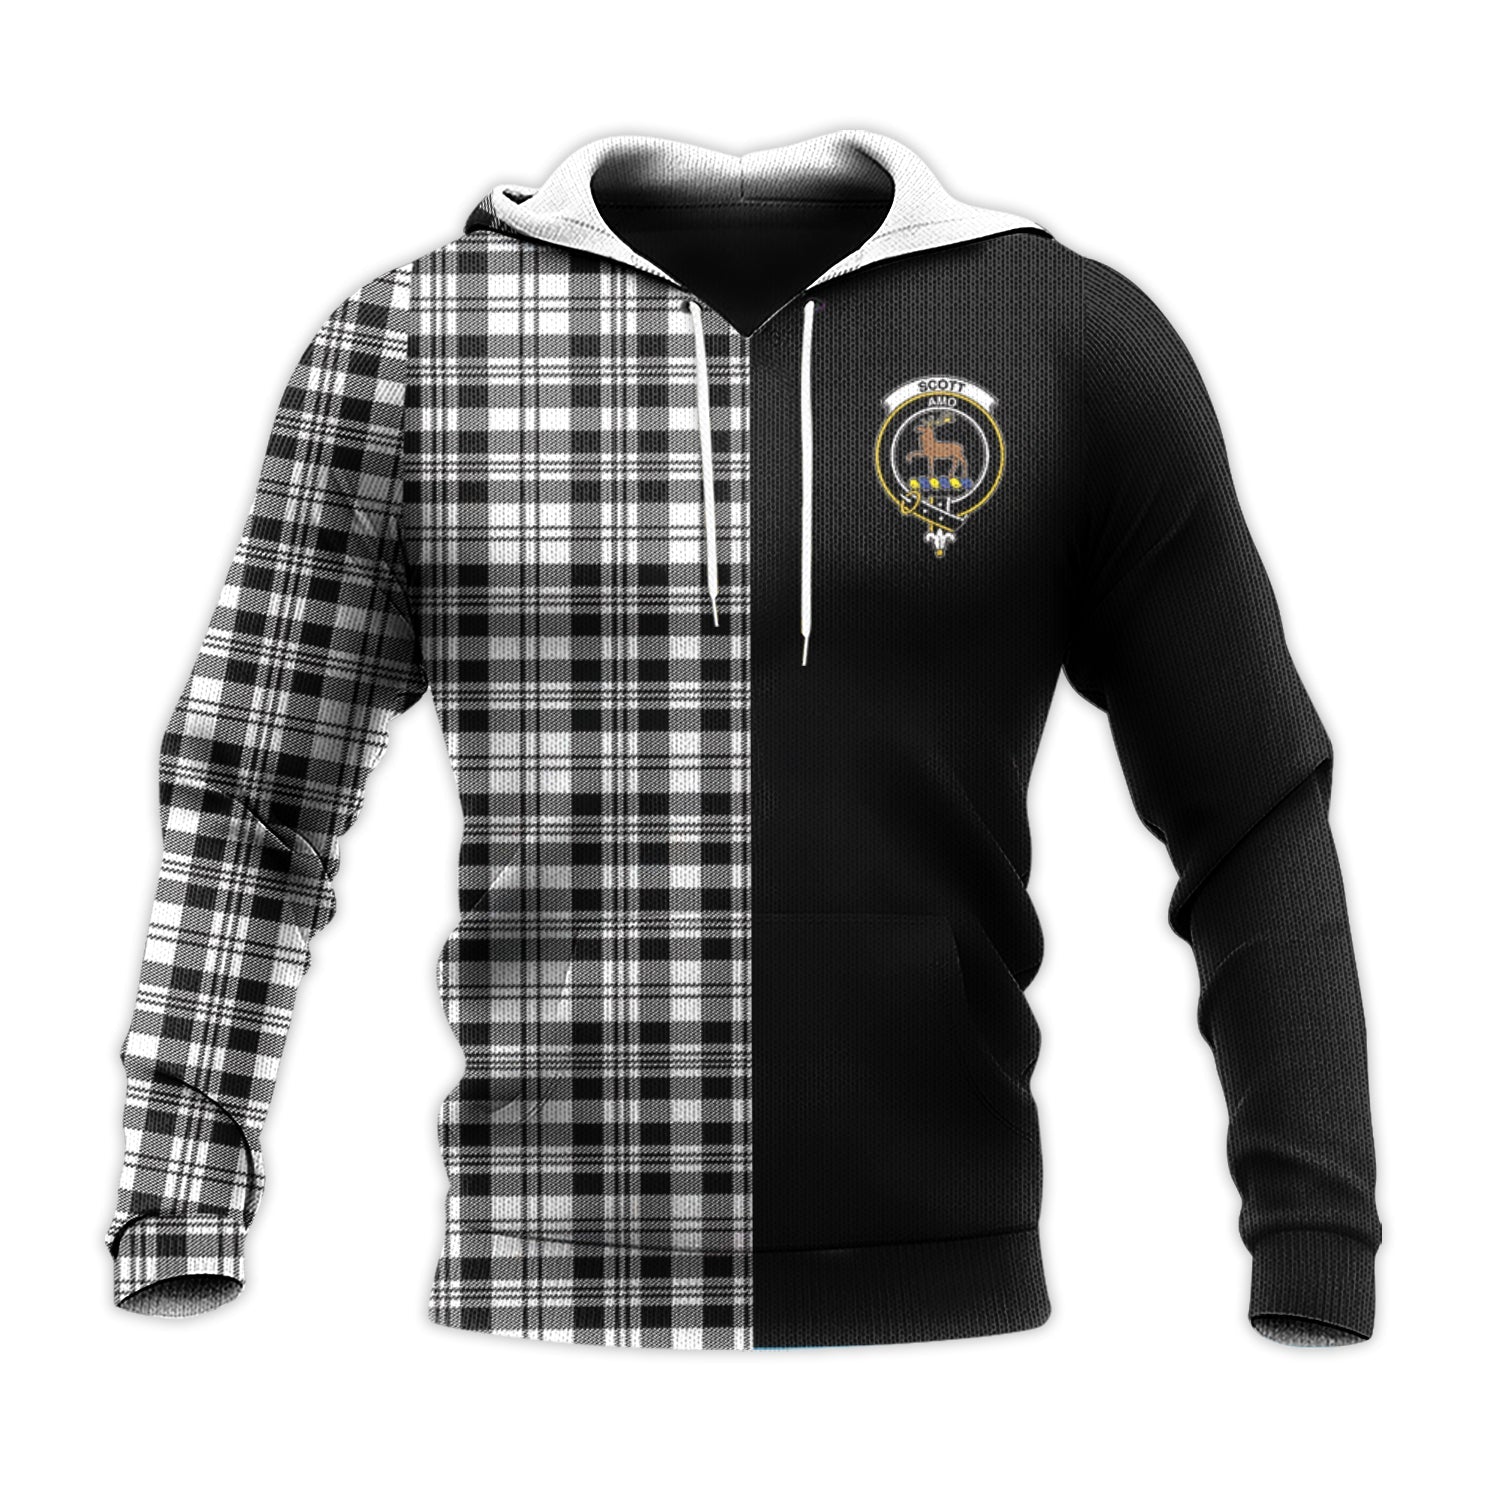 scottish-scott-black-white-clan-crest-tartan-personalize-half-hoodie